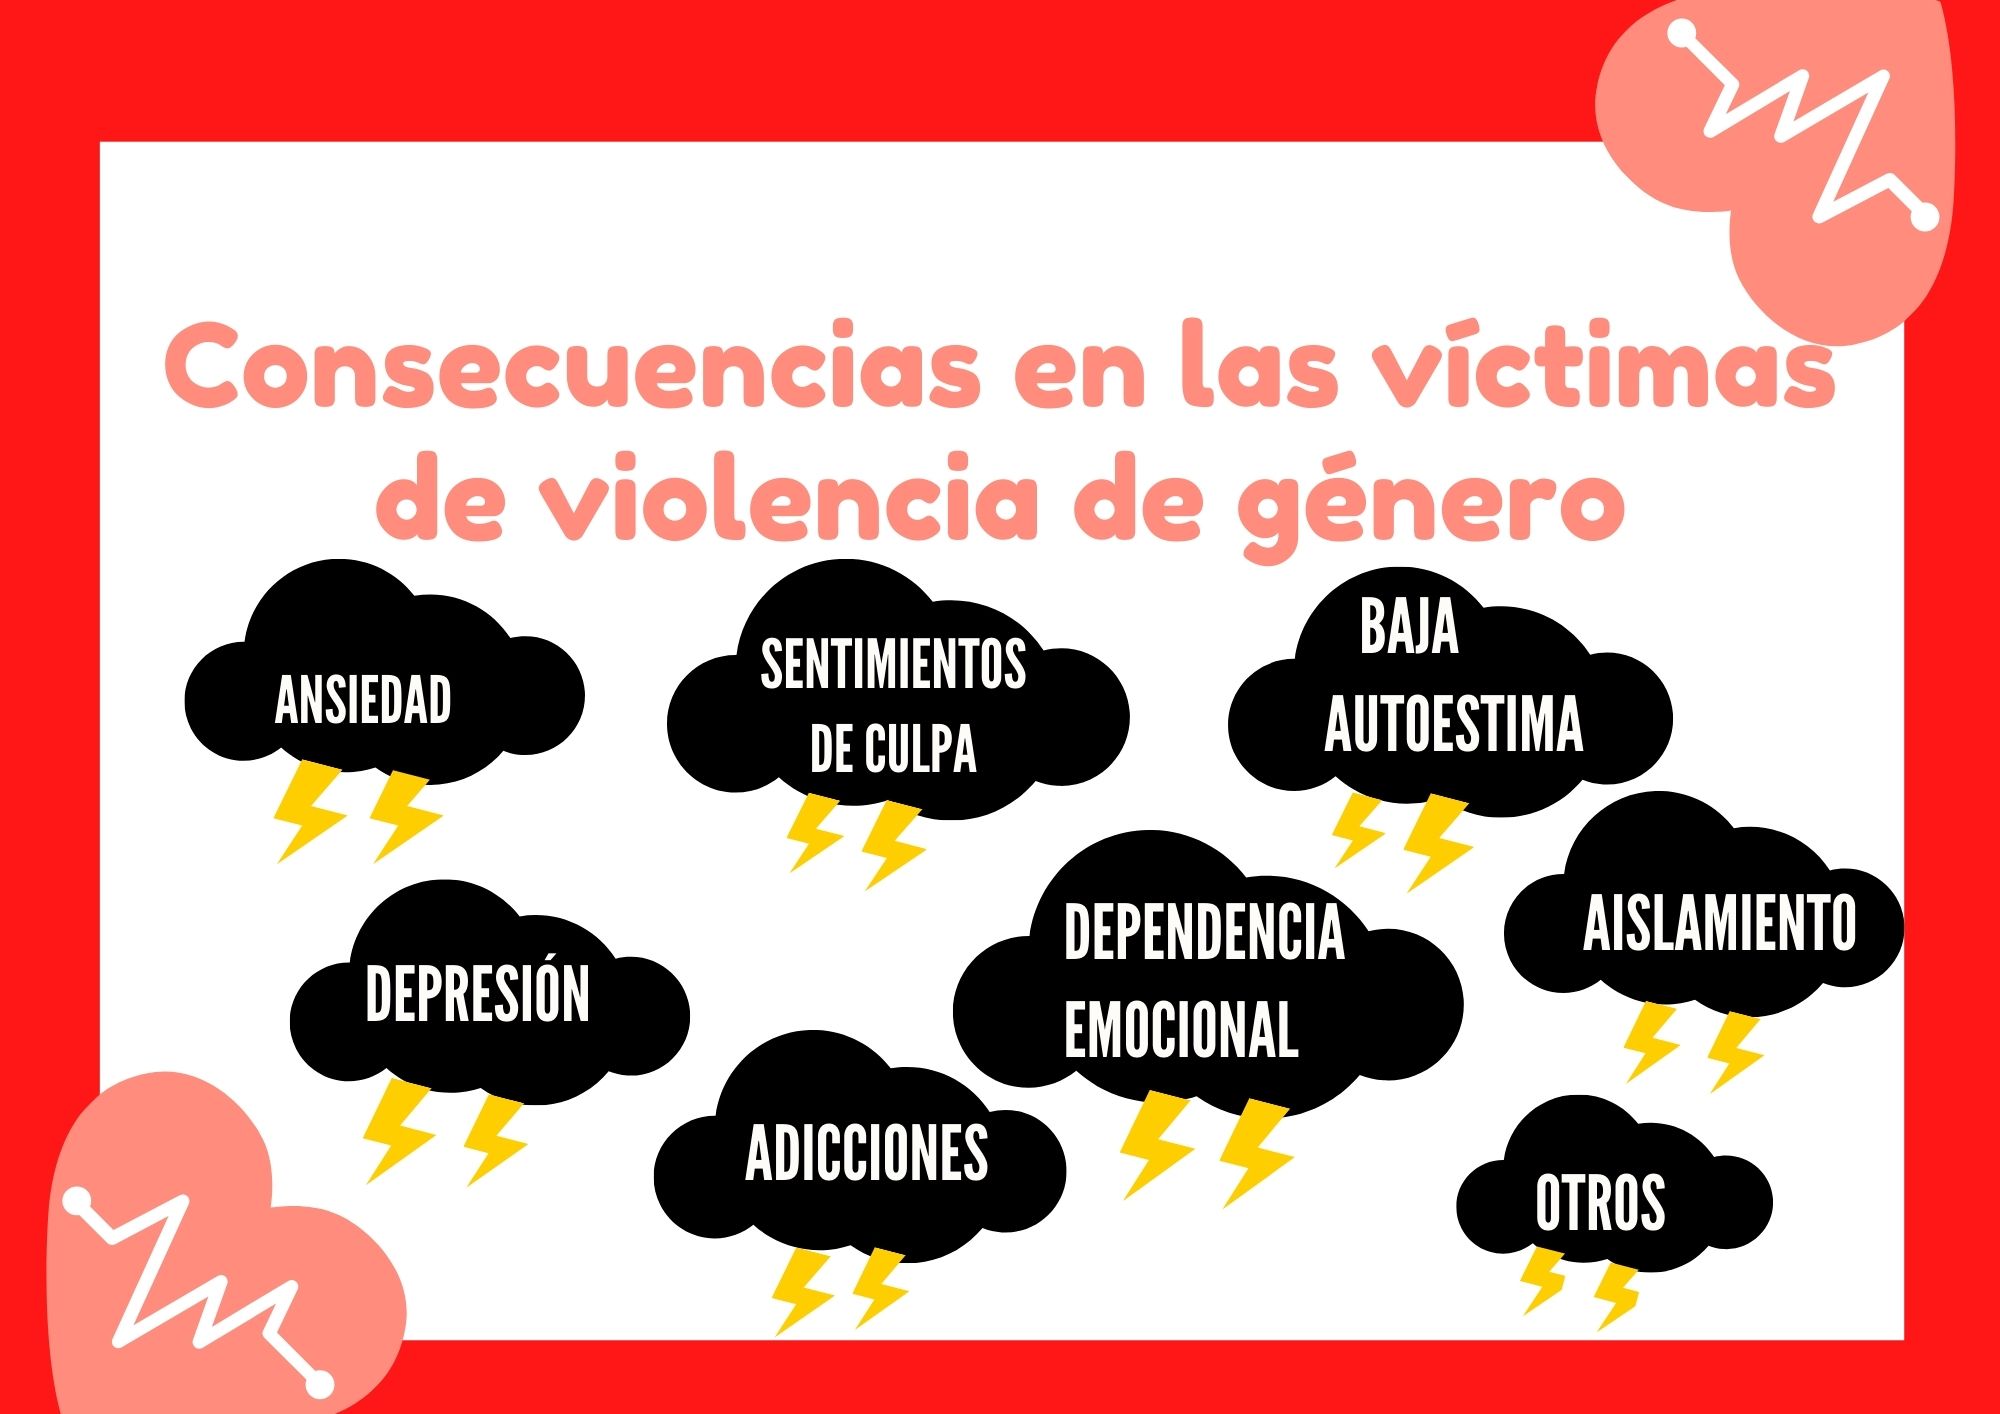 Consecuencias en víctimas de violencia de género (descripción detallada a continuación)